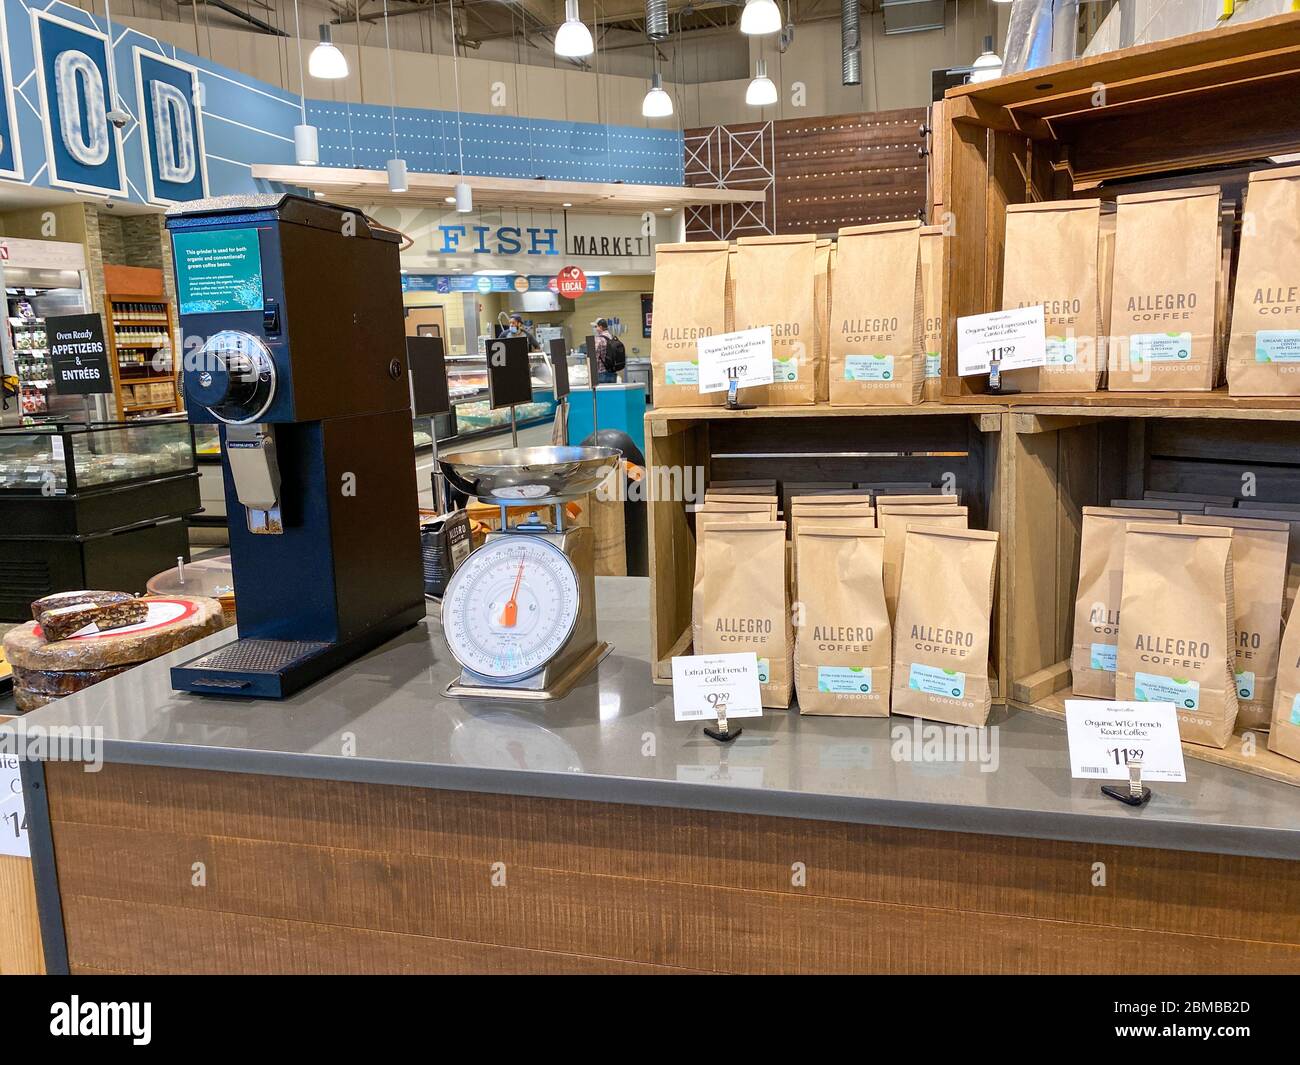 Orlando,FL/USA-5/3/20: Eine Anzeige von Allegro Kaffee mit einer  Kaffeemühle und Skala eines Whole Foods Market Lebensmittelgeschäft  Stockfotografie - Alamy